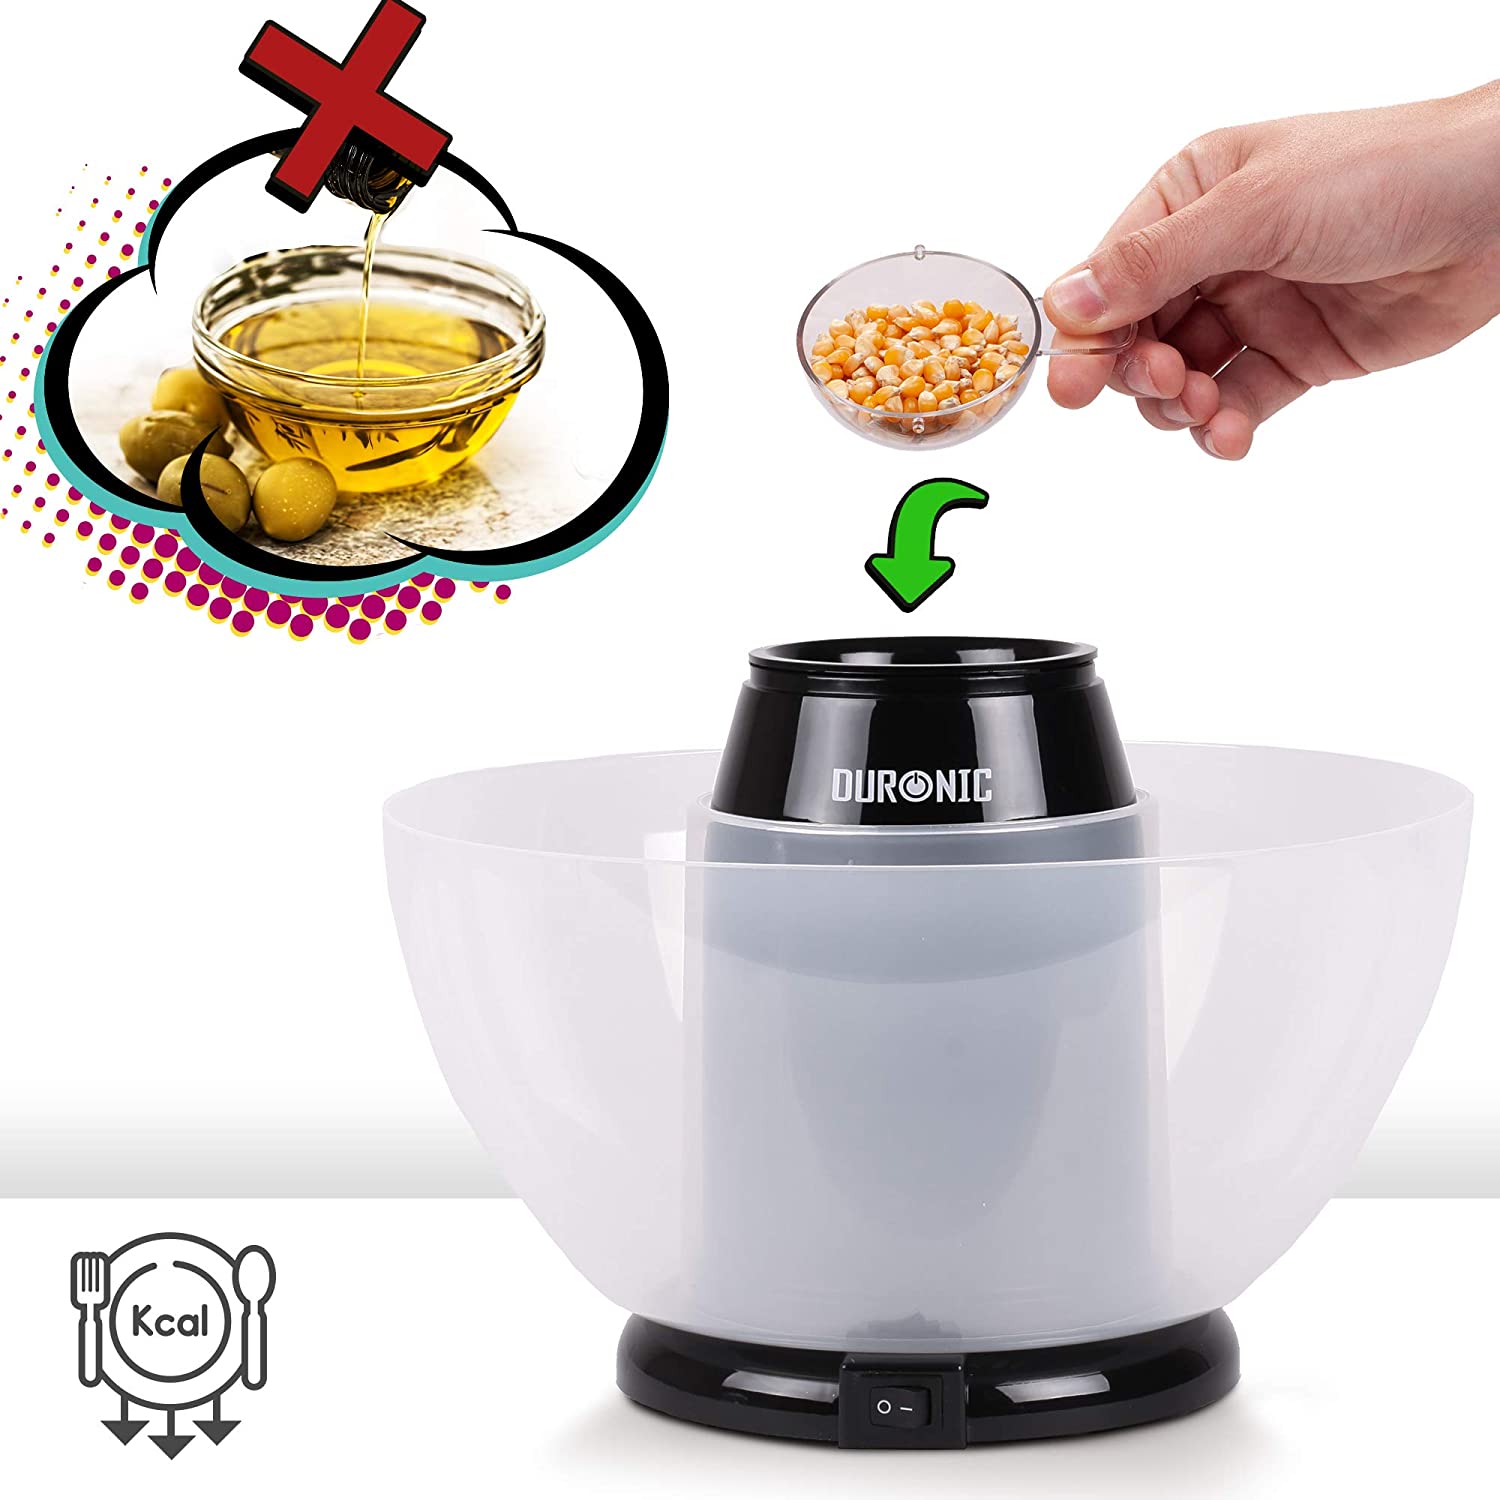 Duronic POP50 BK maszyna do popcornu automat 1200 W, do prażenia ziaren kukurydzy, wyjmowana misa, bez oleju